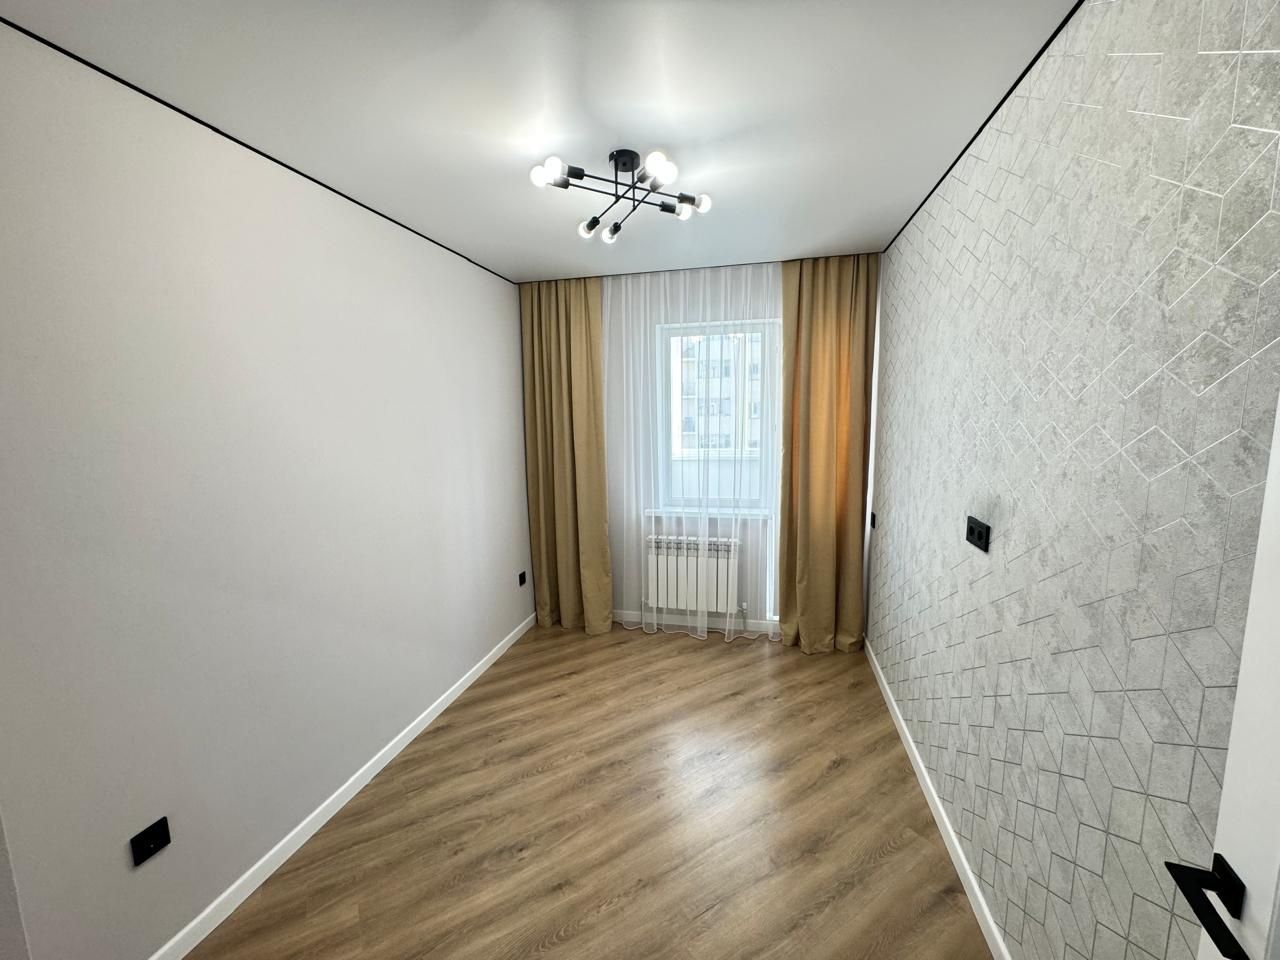 Продается 3х комнатная квартира на левом берегу в ЖК Шыгыс.